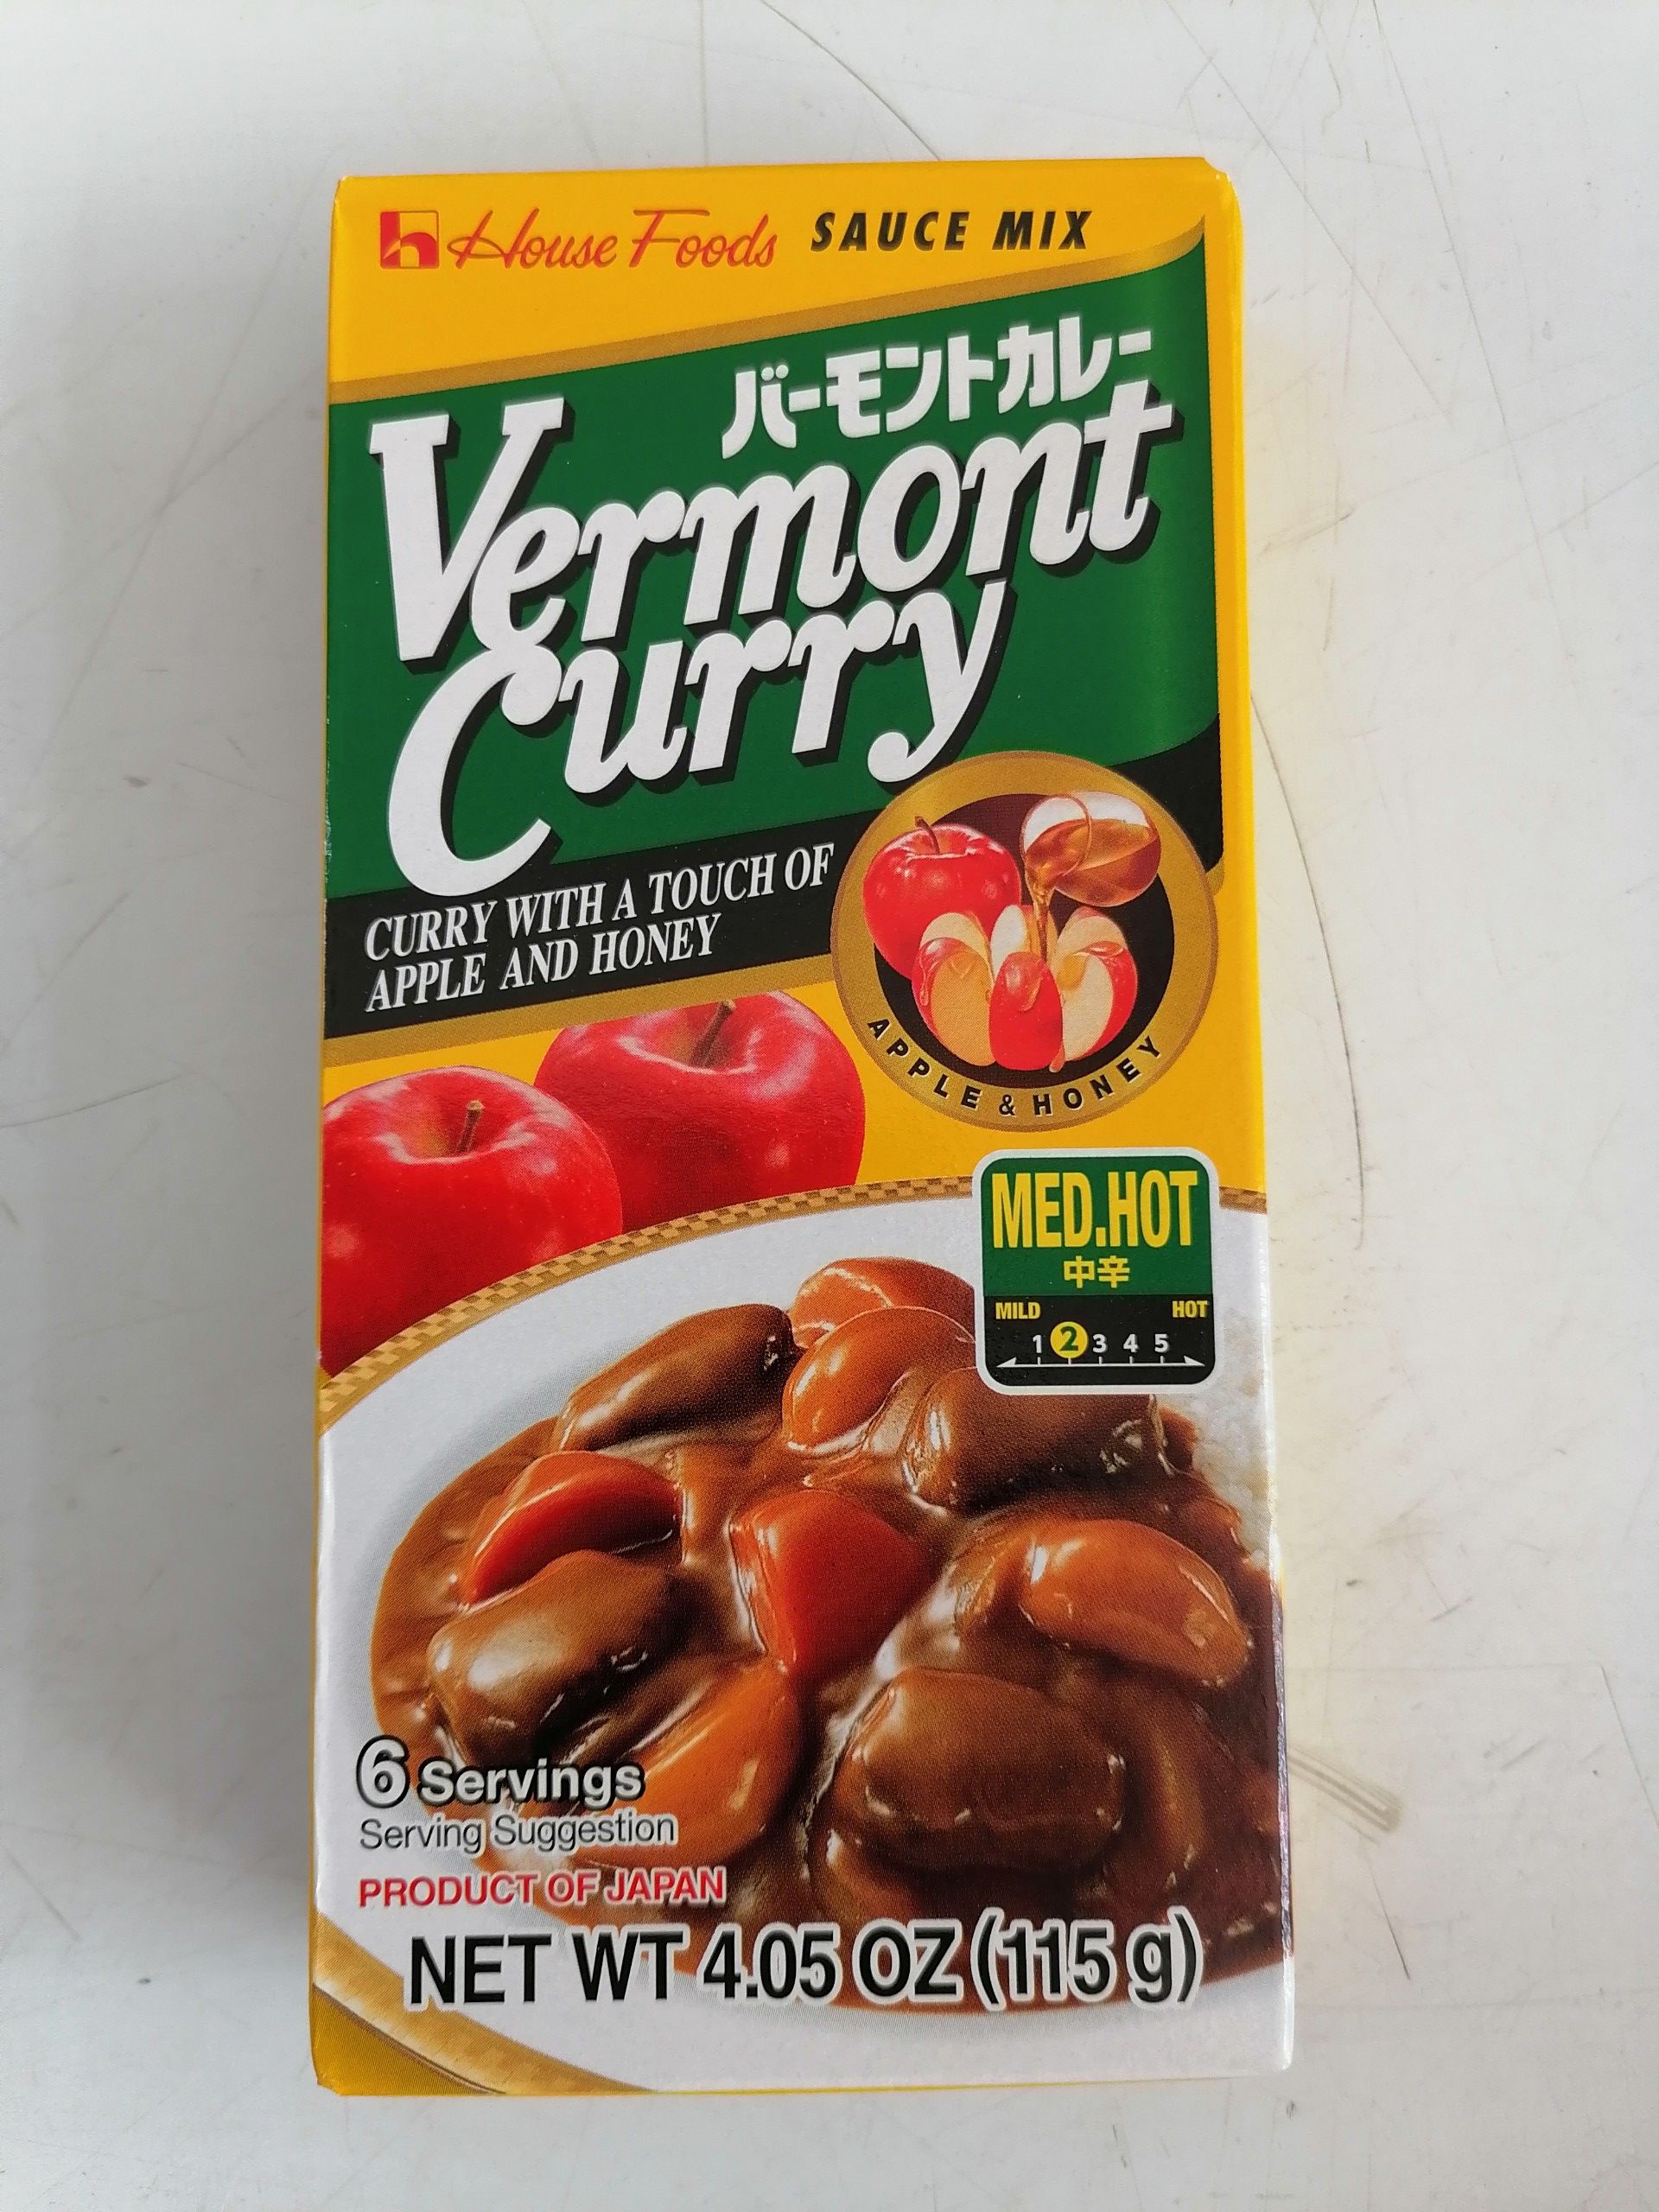 [Nhỏ 115g – Vermont (Xanh lá) - MED.HOT] Viên xốt cà ri cô đặc vị cay vừa [Japan] HOUSE FOODS Curry Sauce Mix (hty-hk